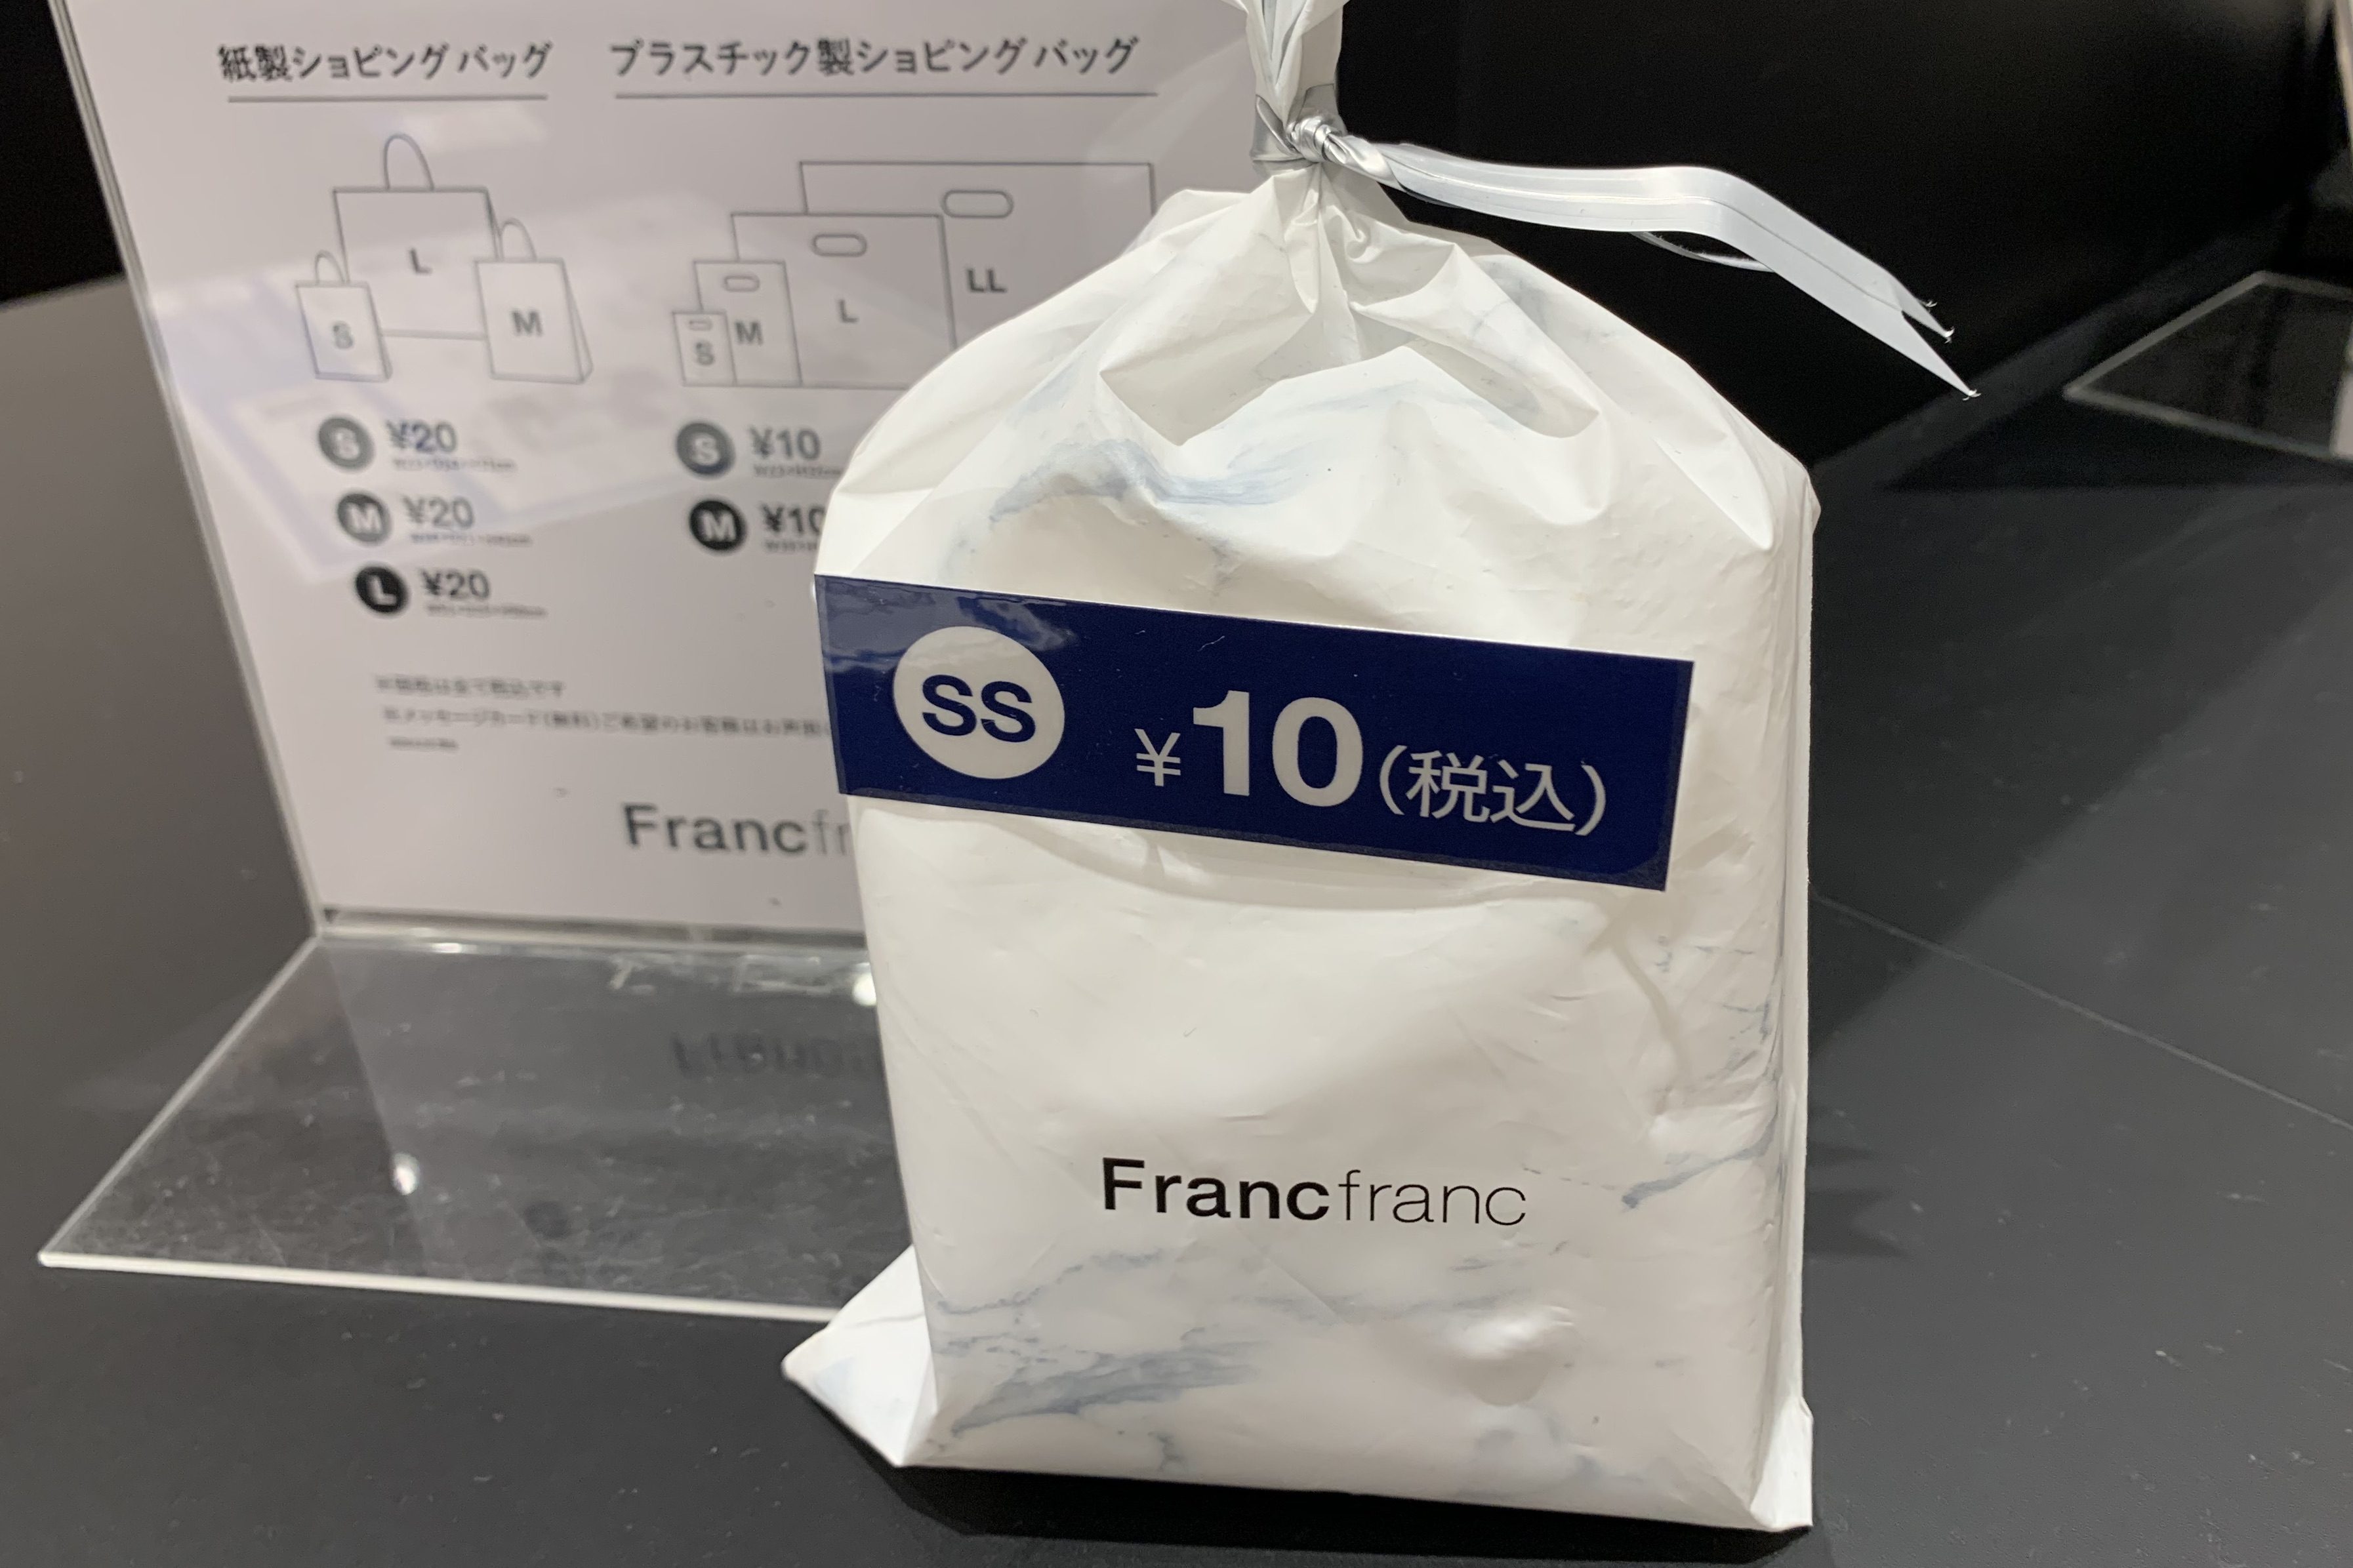 絶品 フランフランFrancfranc ショッパー 紙袋 ラッピング袋セット